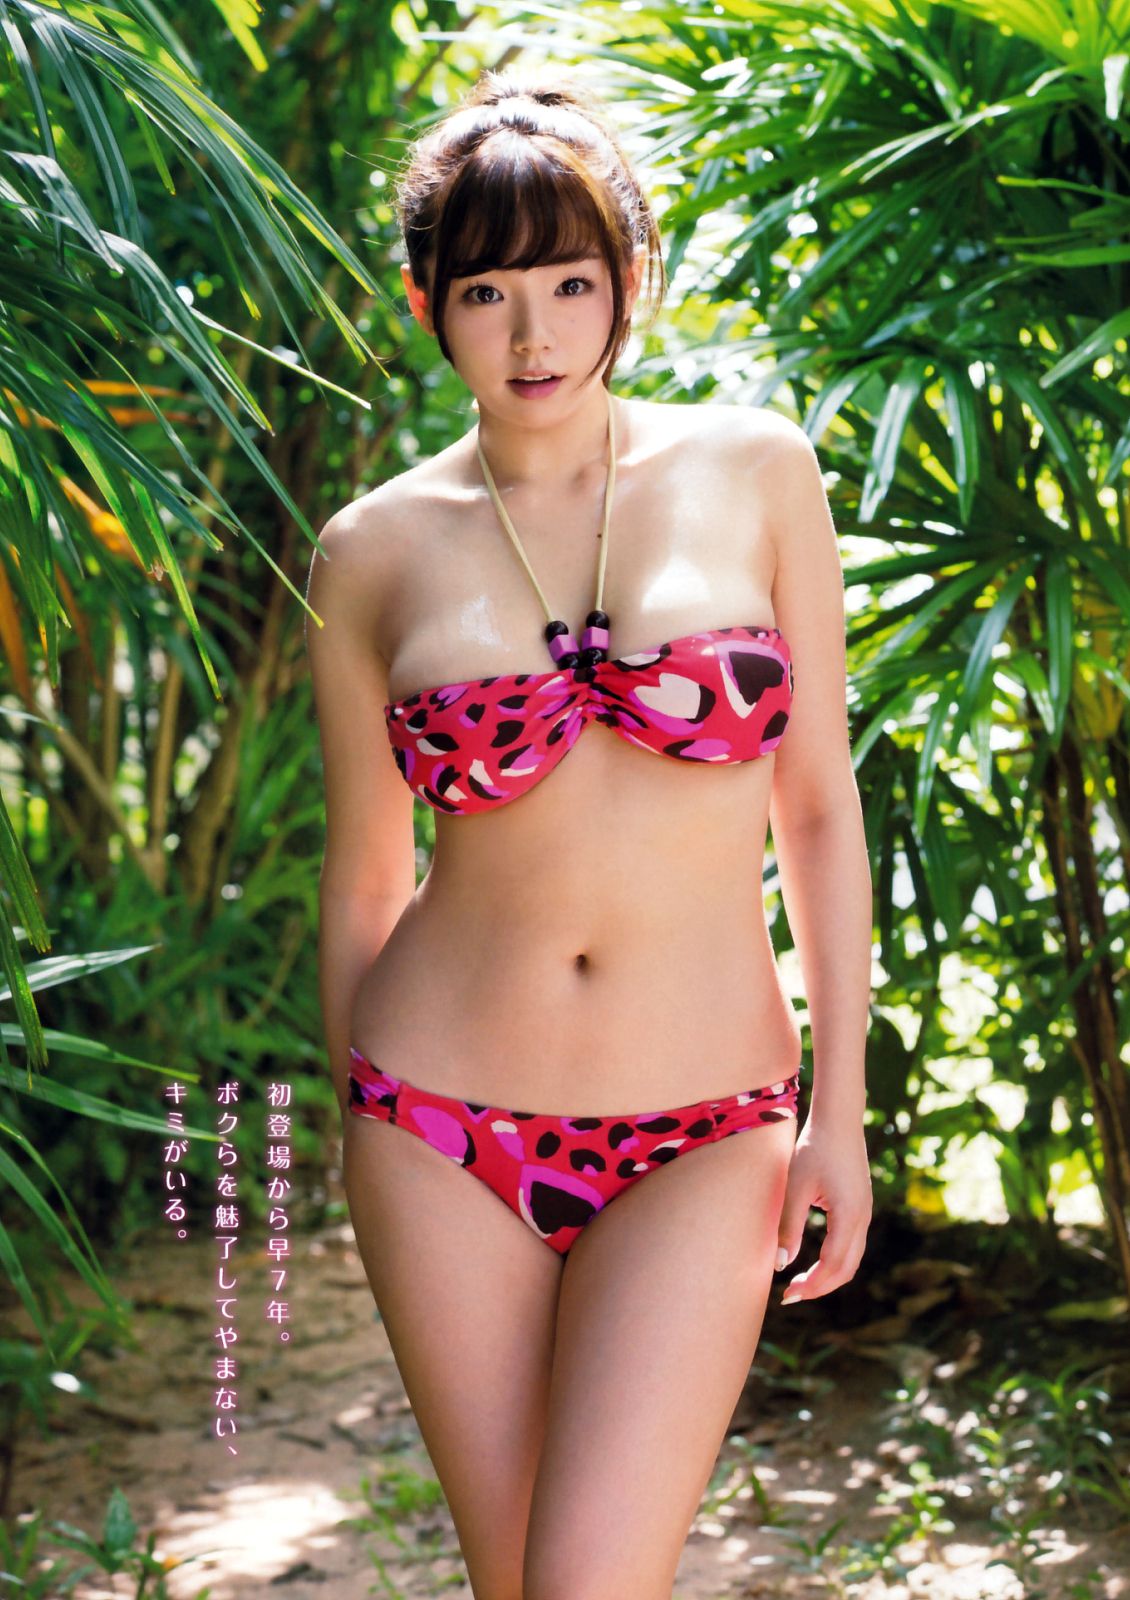 японские девочки модели порно фото 54